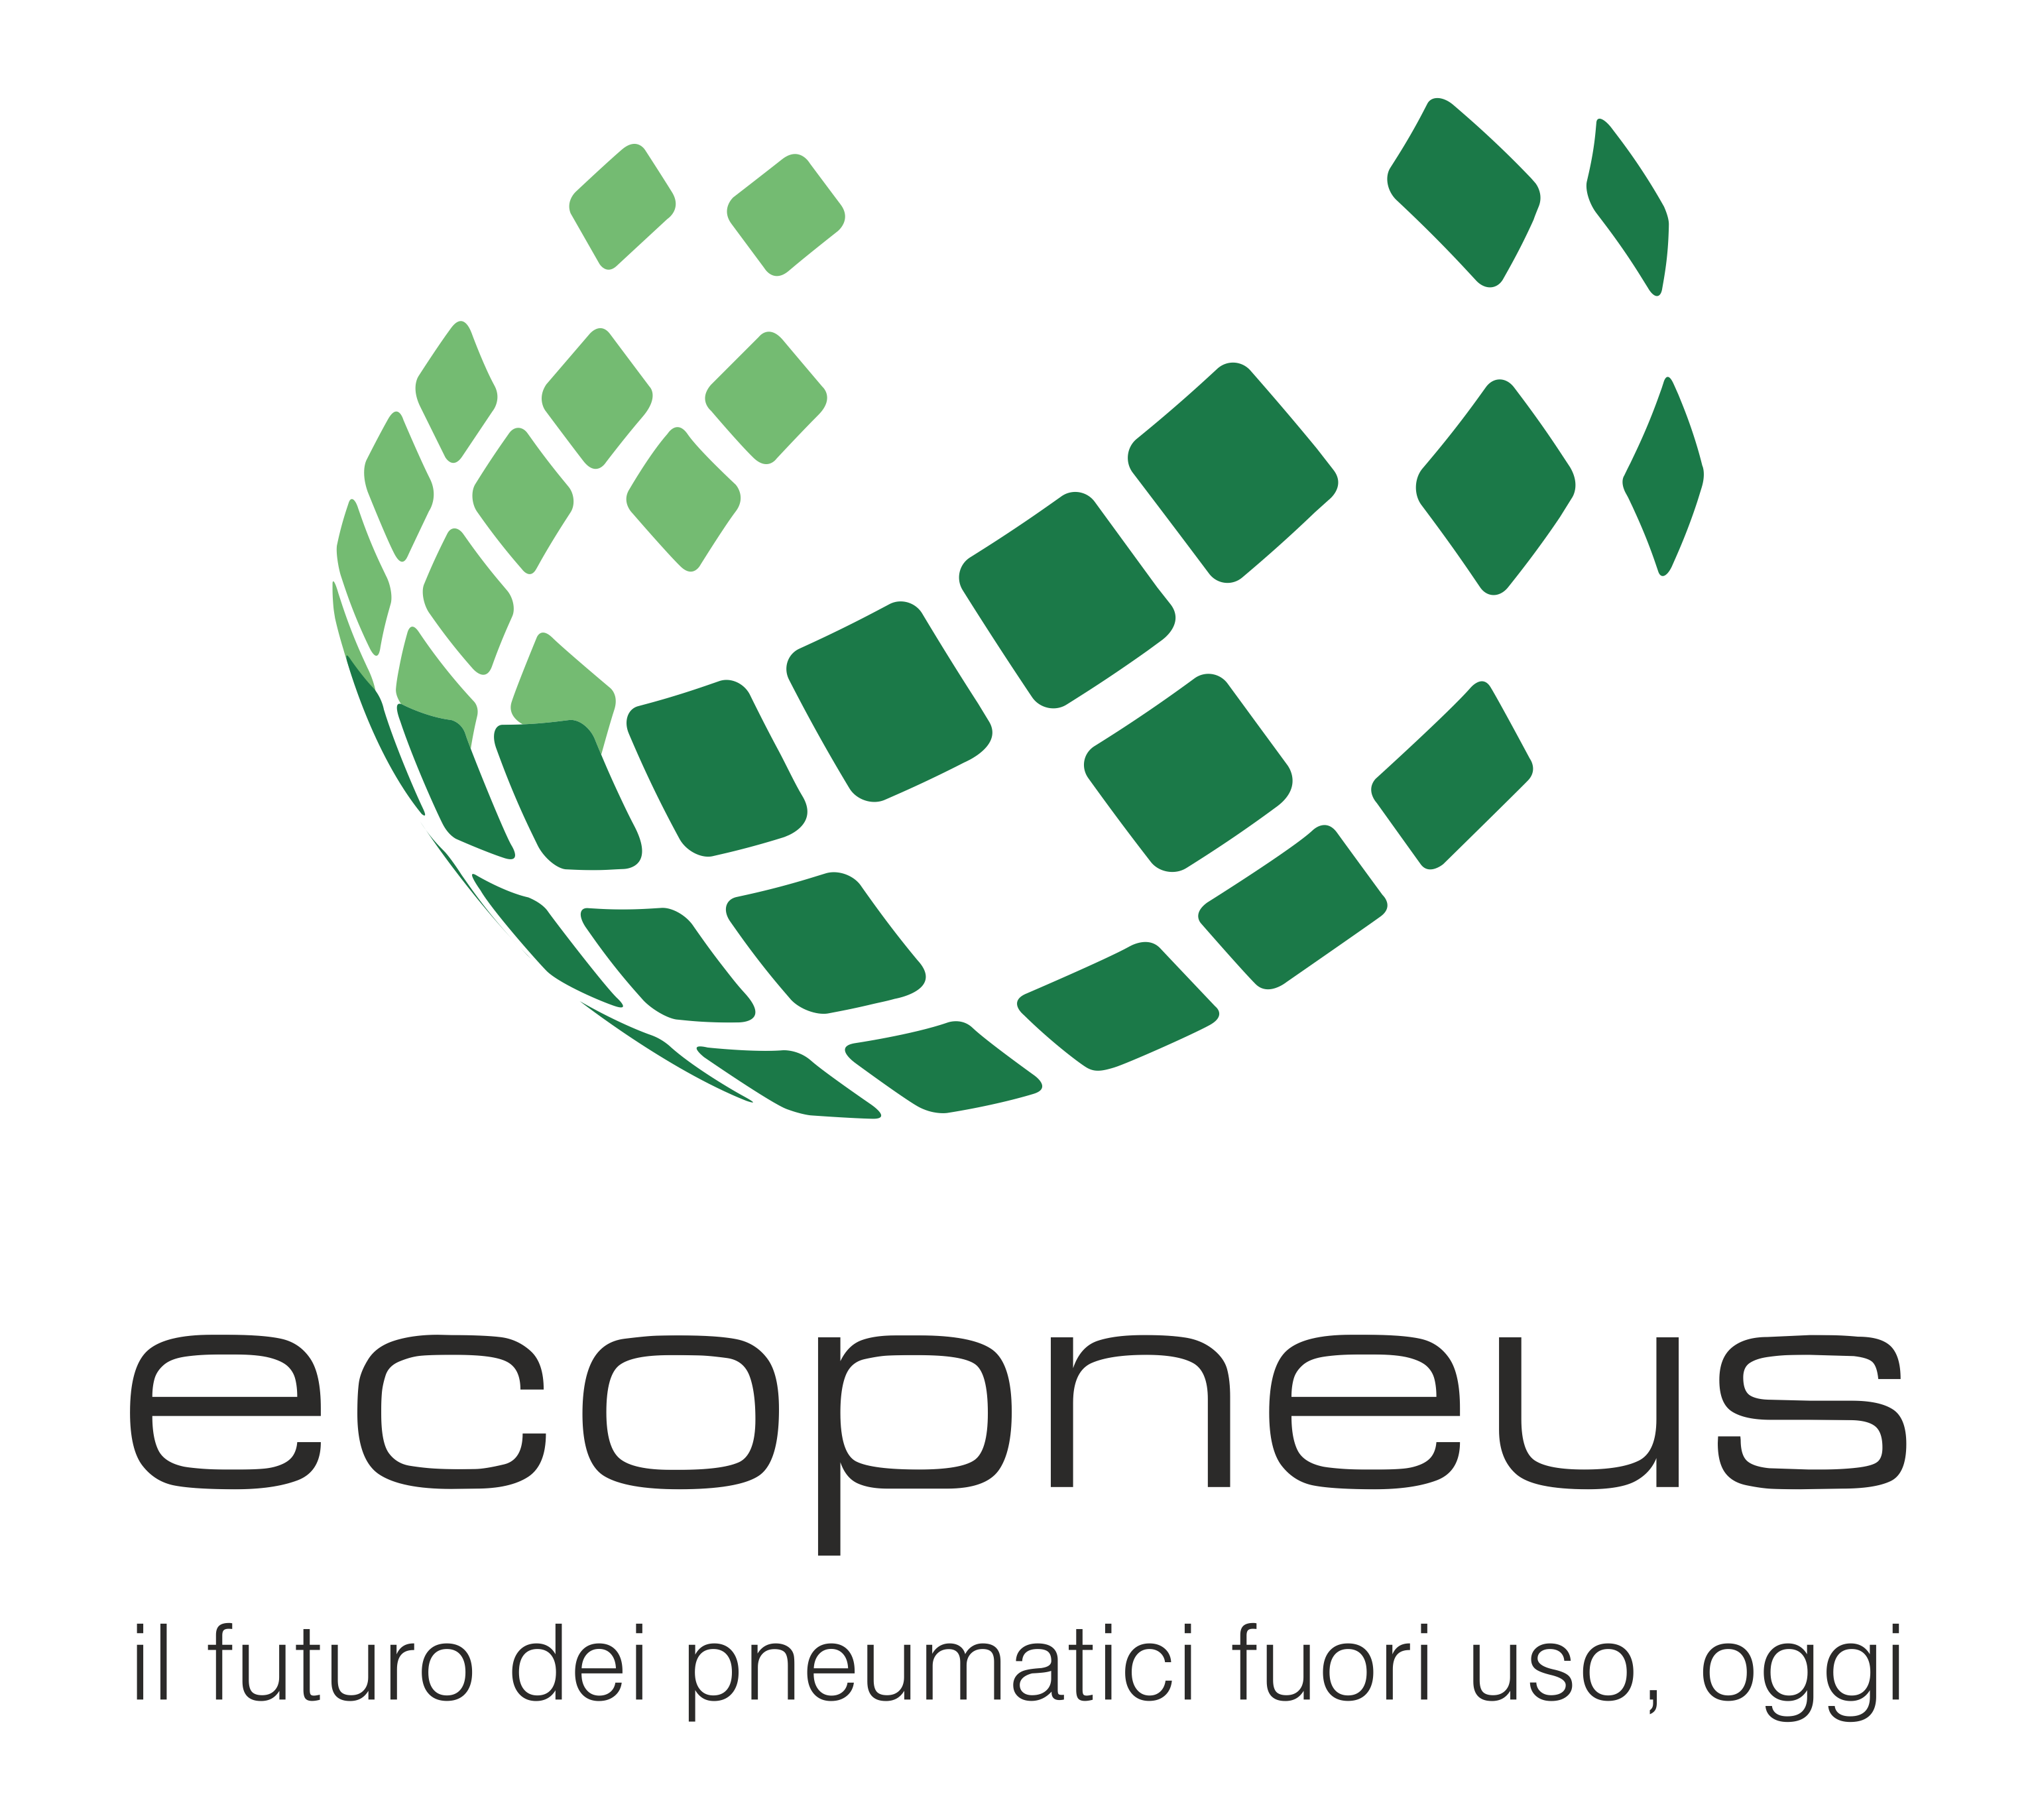 Ecopeneus